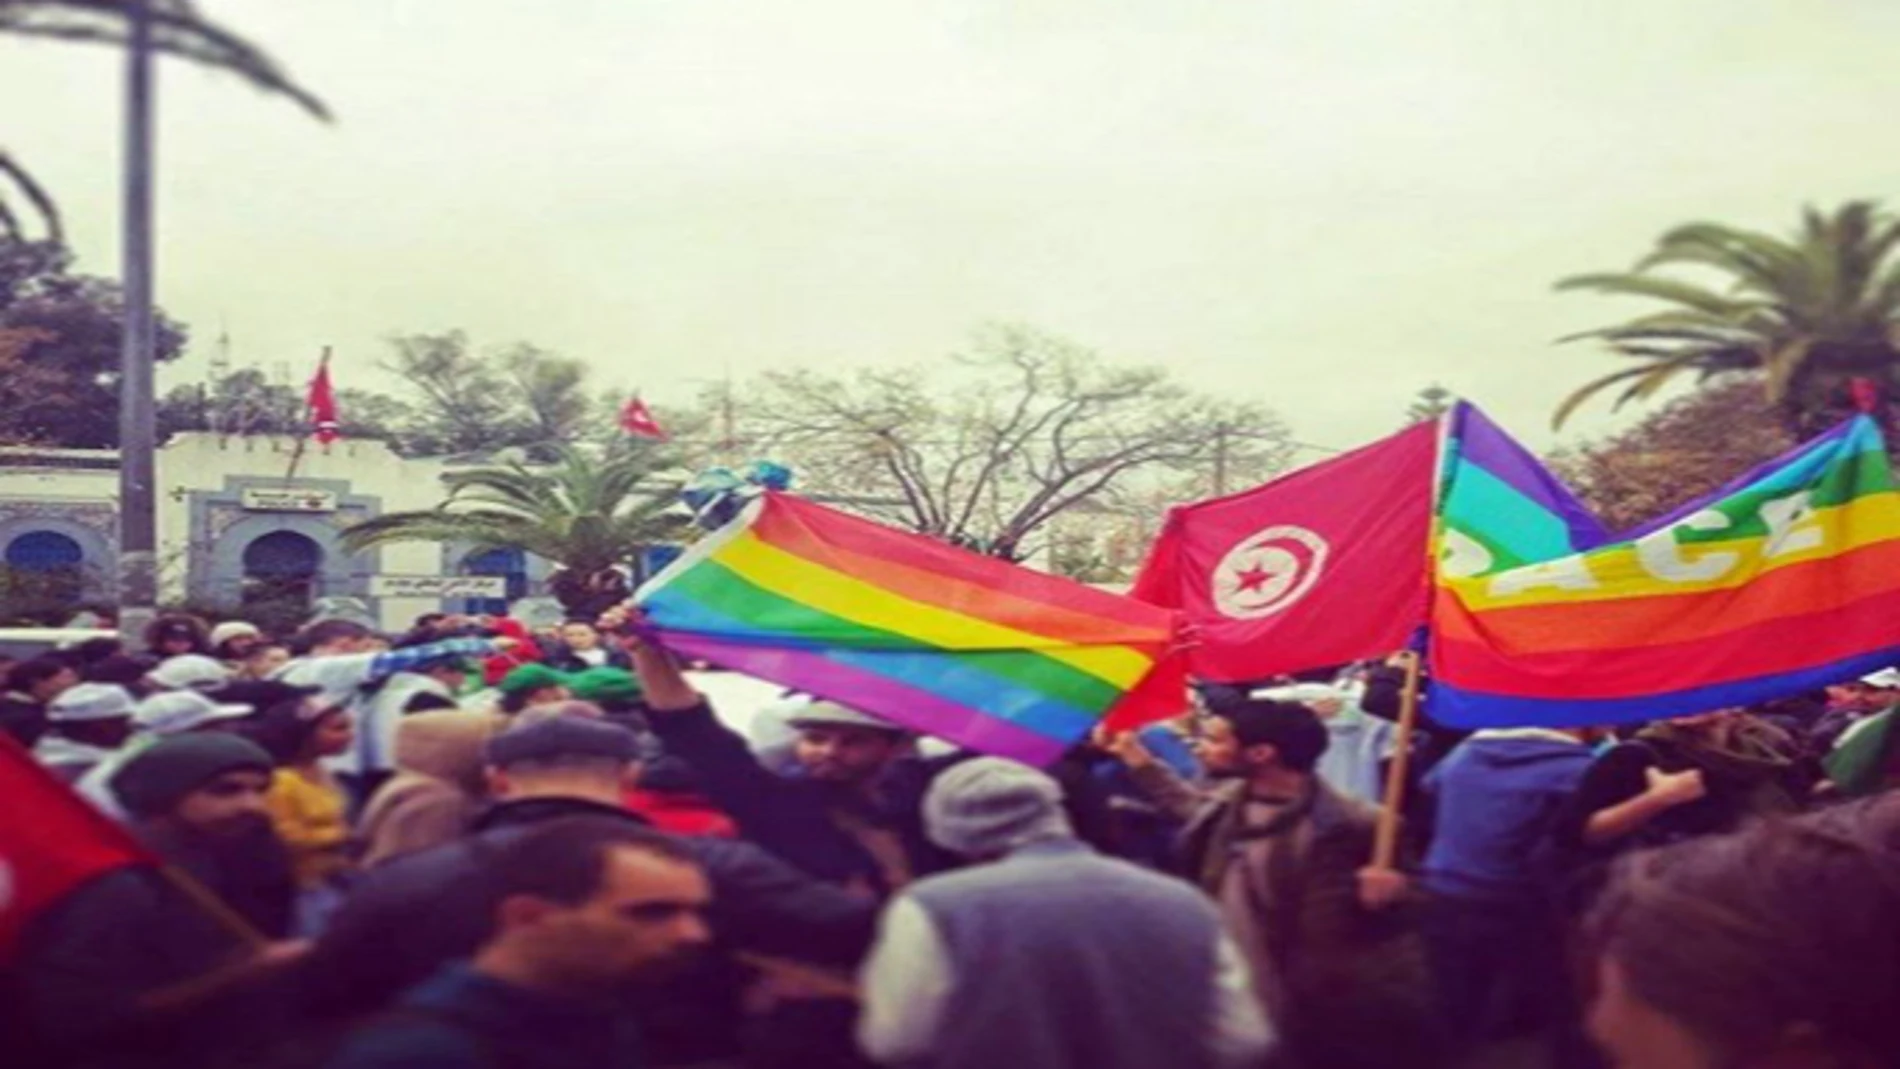 ¿Cómo se liga siendo gay en un país como Túnez?